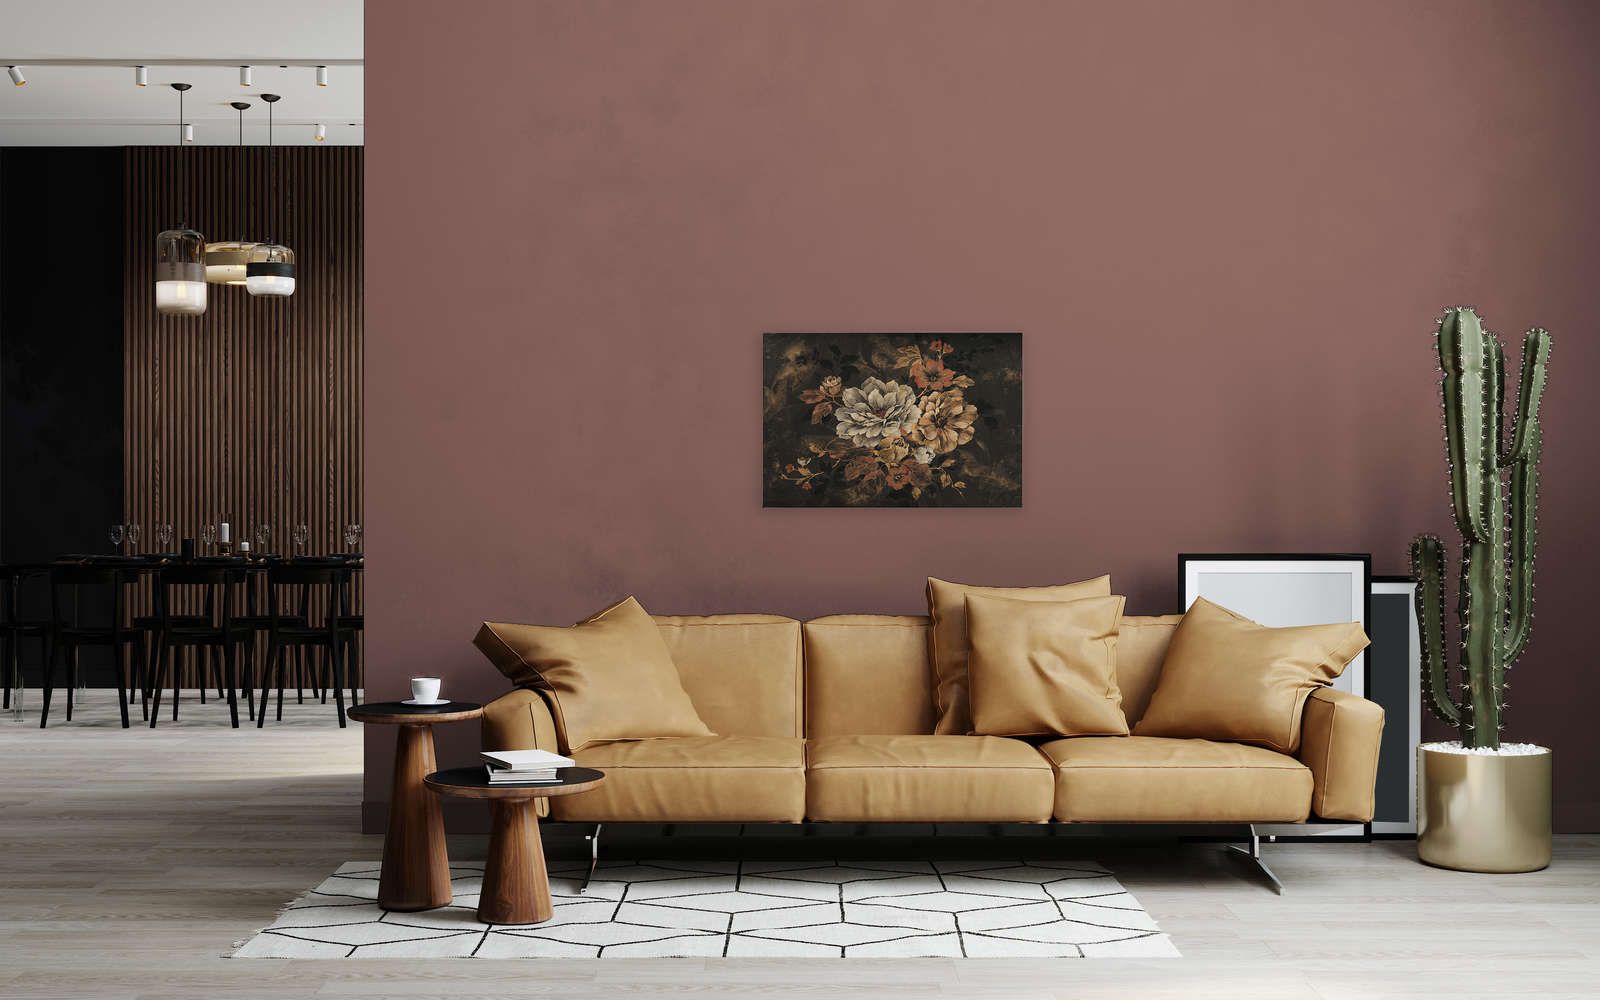             Canvas schilderij Bloem ontwerp, olieverfschilderij in vintage look - 0,90 m x 0,60 m
        